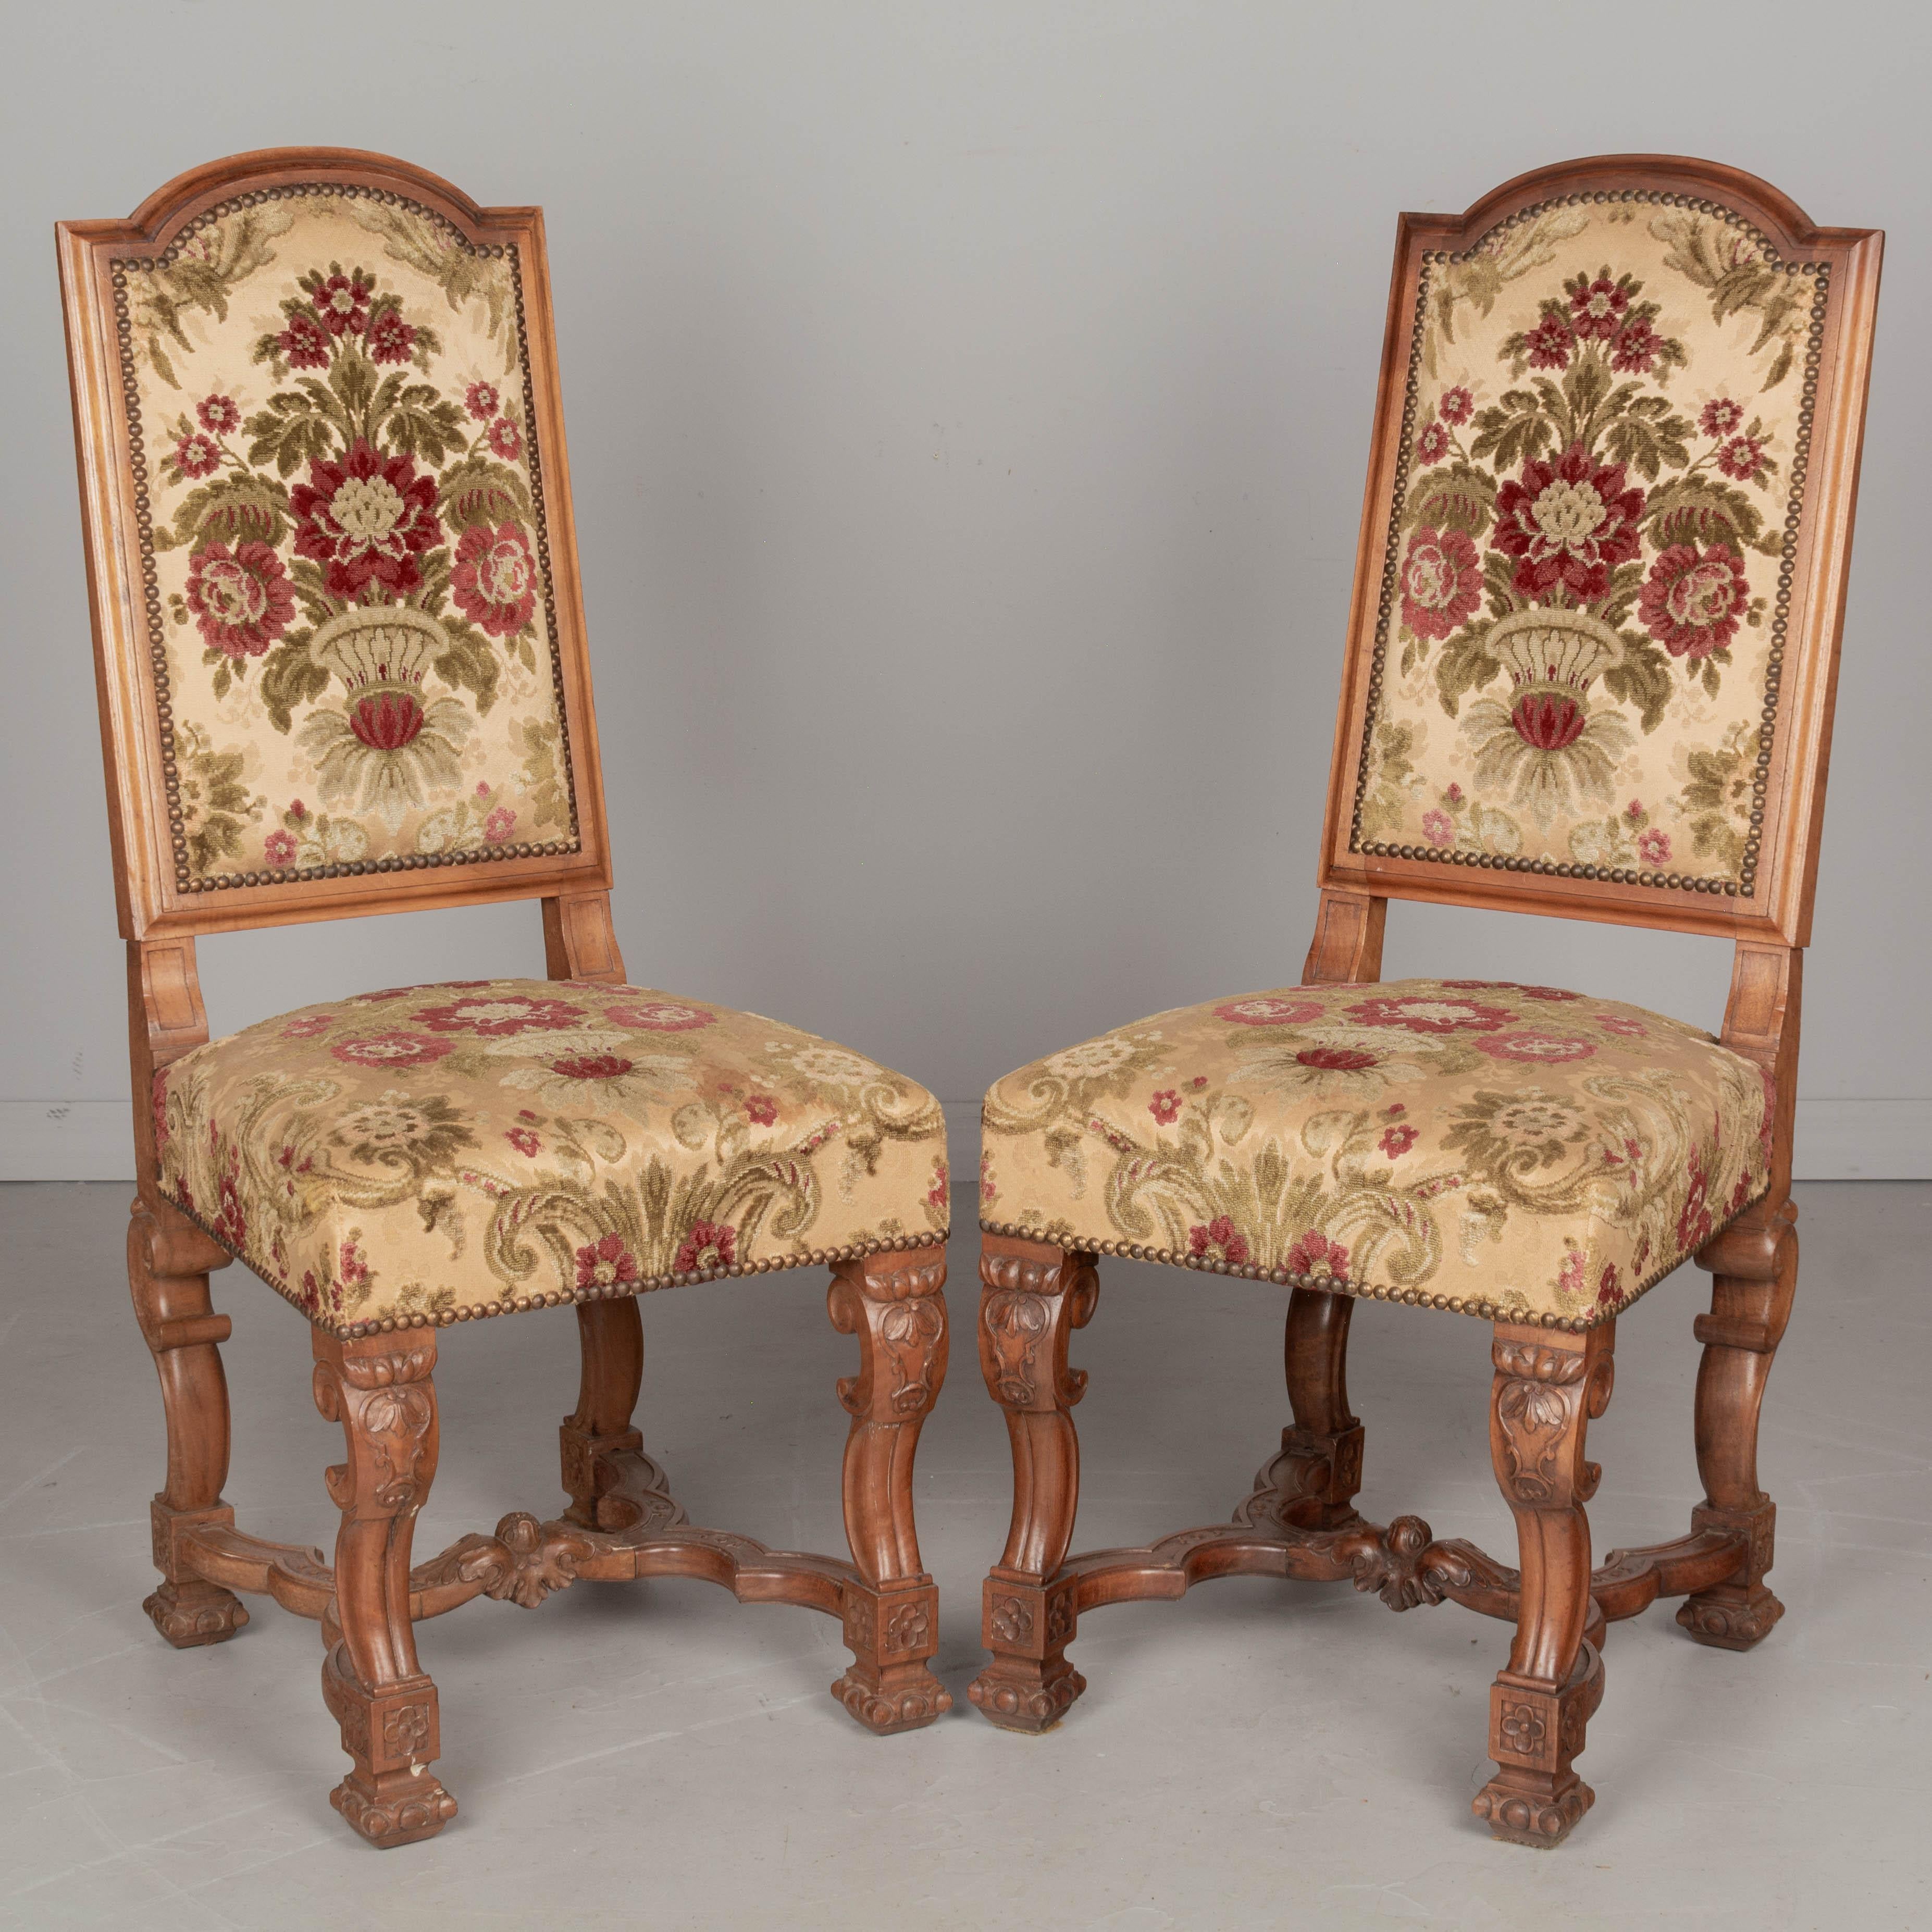 Un ensemble de huit chaises de salle à manger de style Louis XIII, avec des cadres en noyer massif et une tapisserie d'origine en brocart de velours. Robuste et bien construit, avec un dossier haut, des pieds et des traverses sculptés. Le tissu est